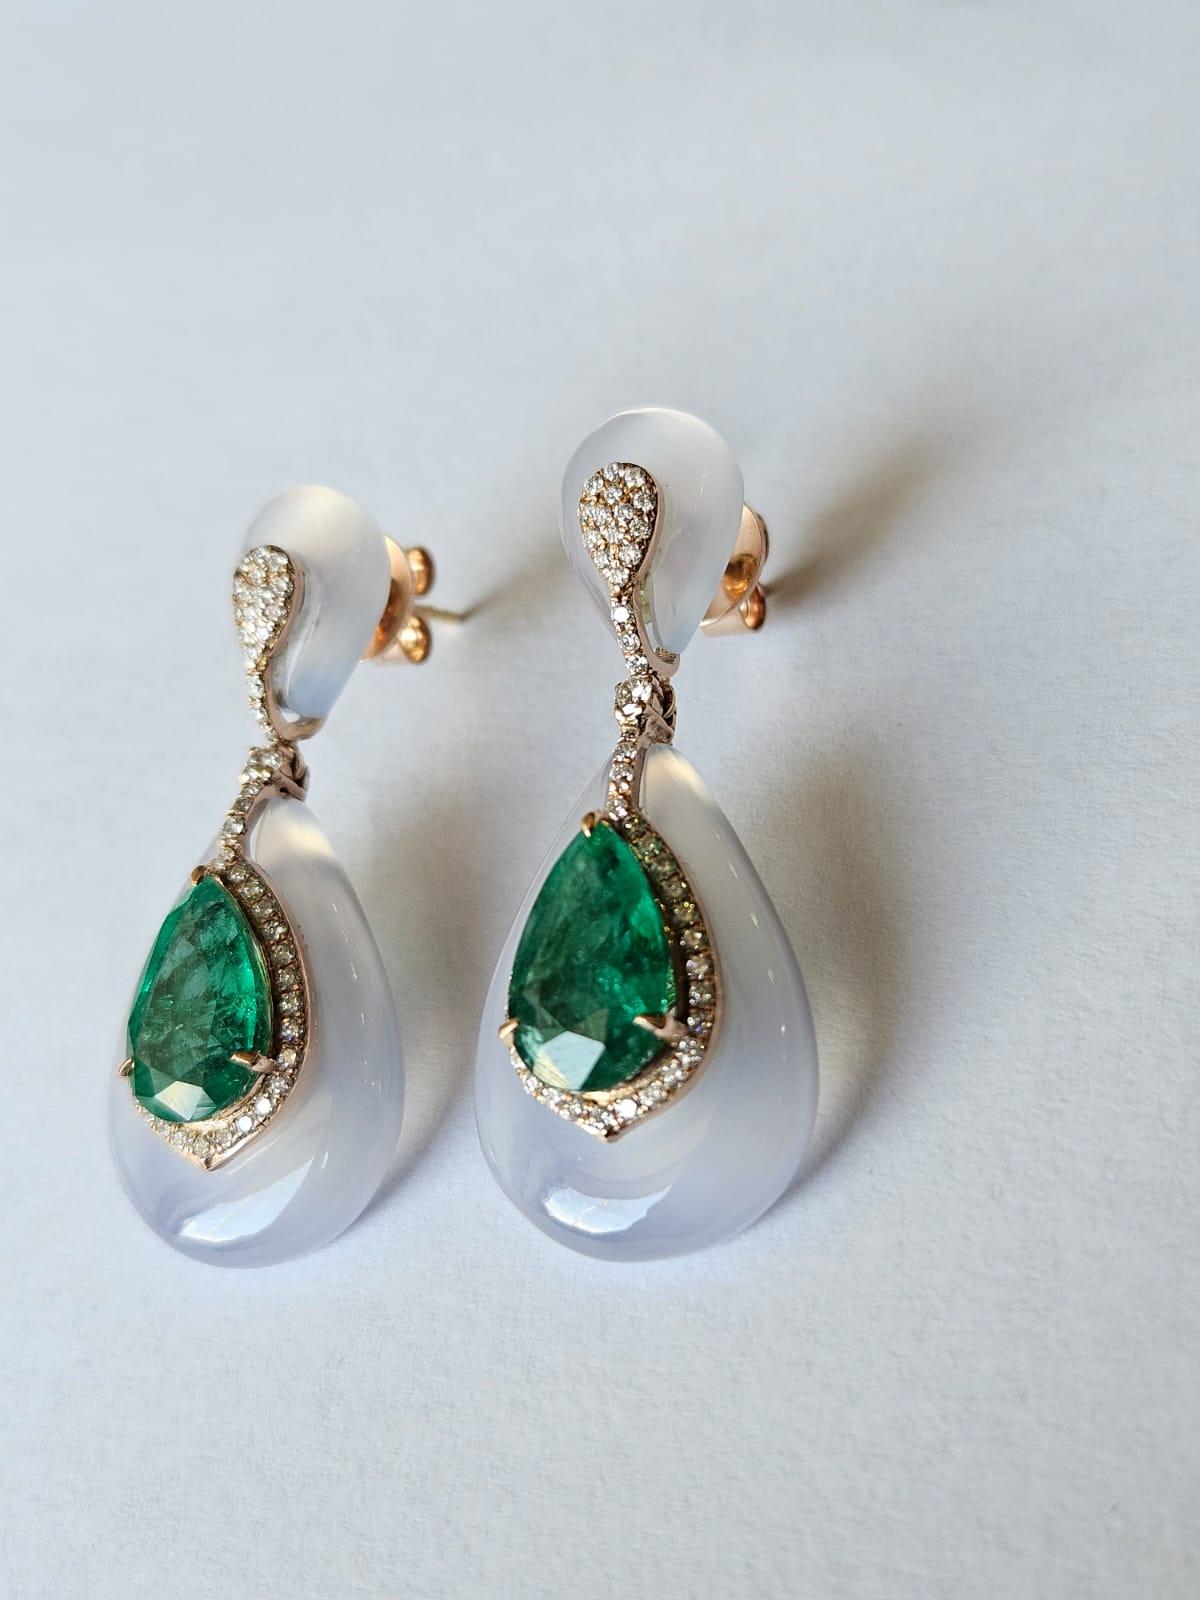 Modern Set in 18K Gold, Zambian Emerald, Chalcedony & Diamonds Chandelier Earrings For Sale